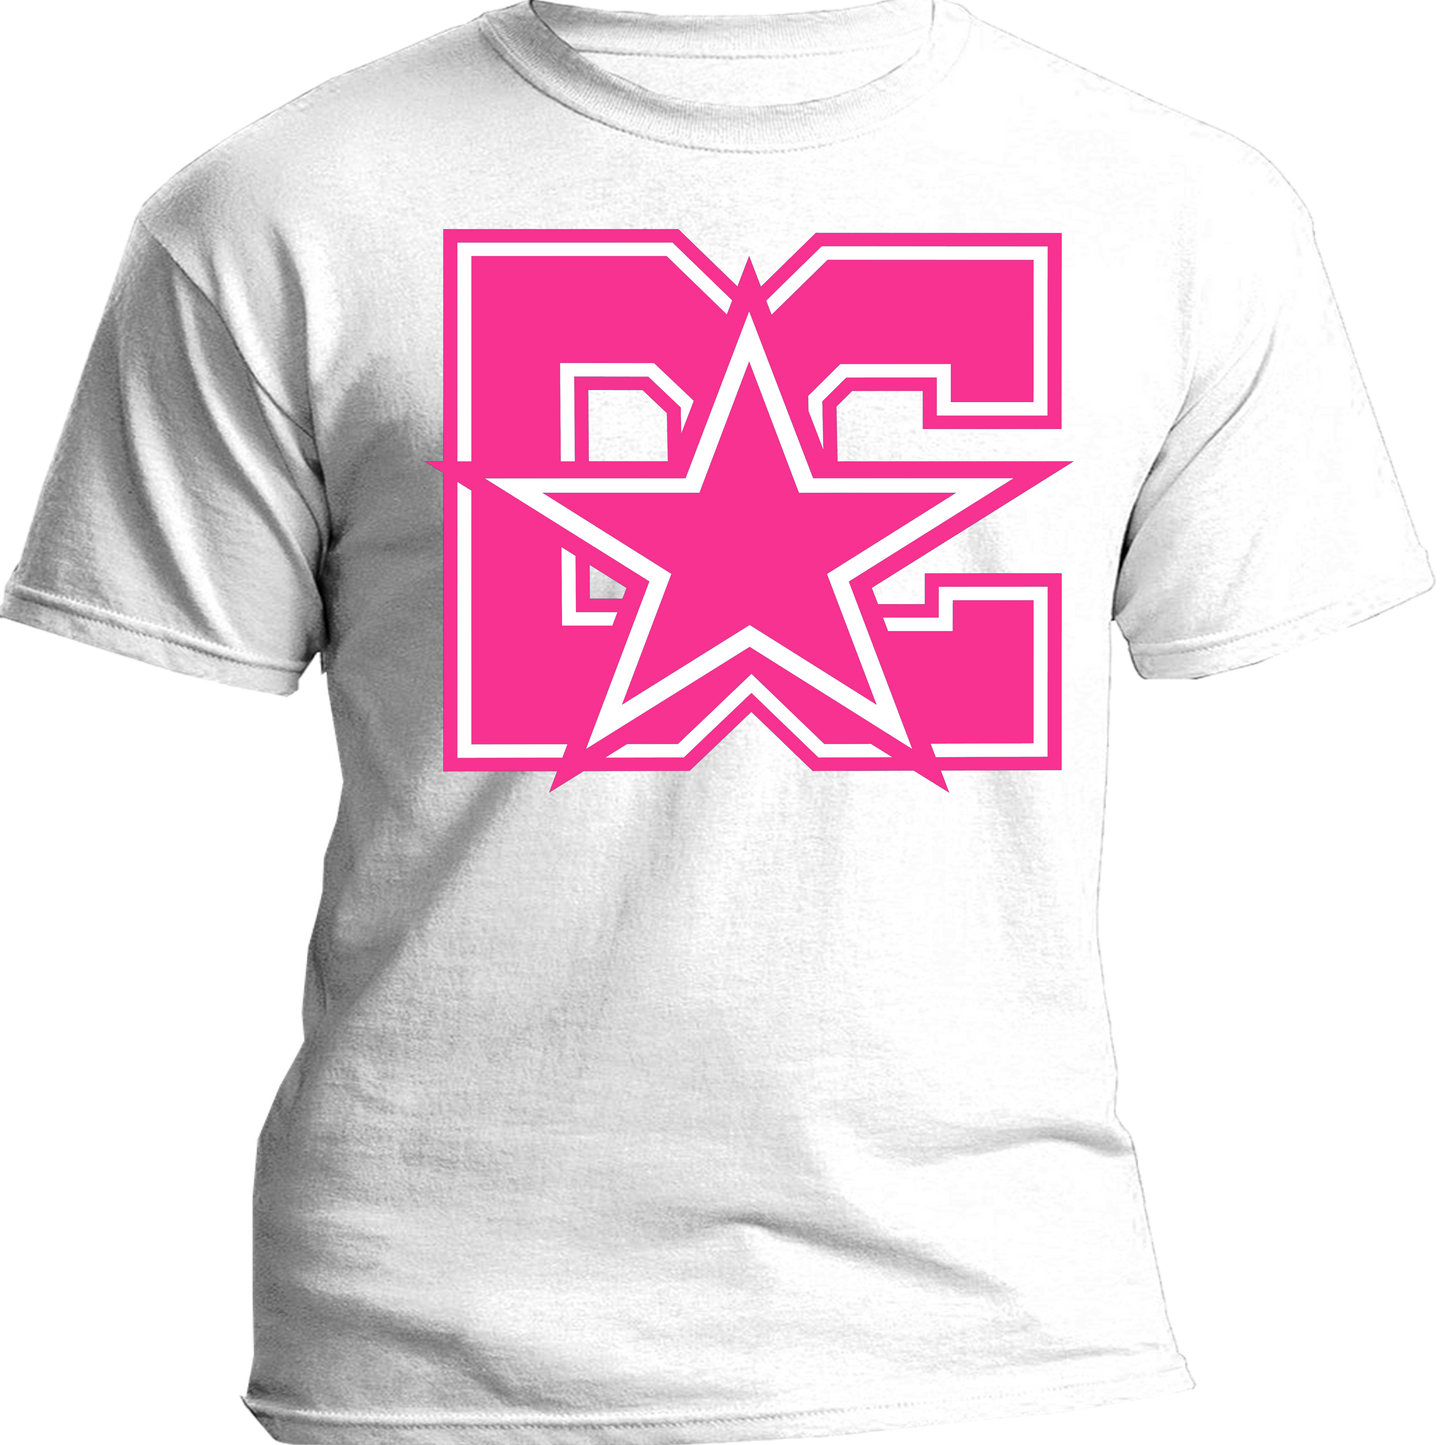 DC BCA Shirt